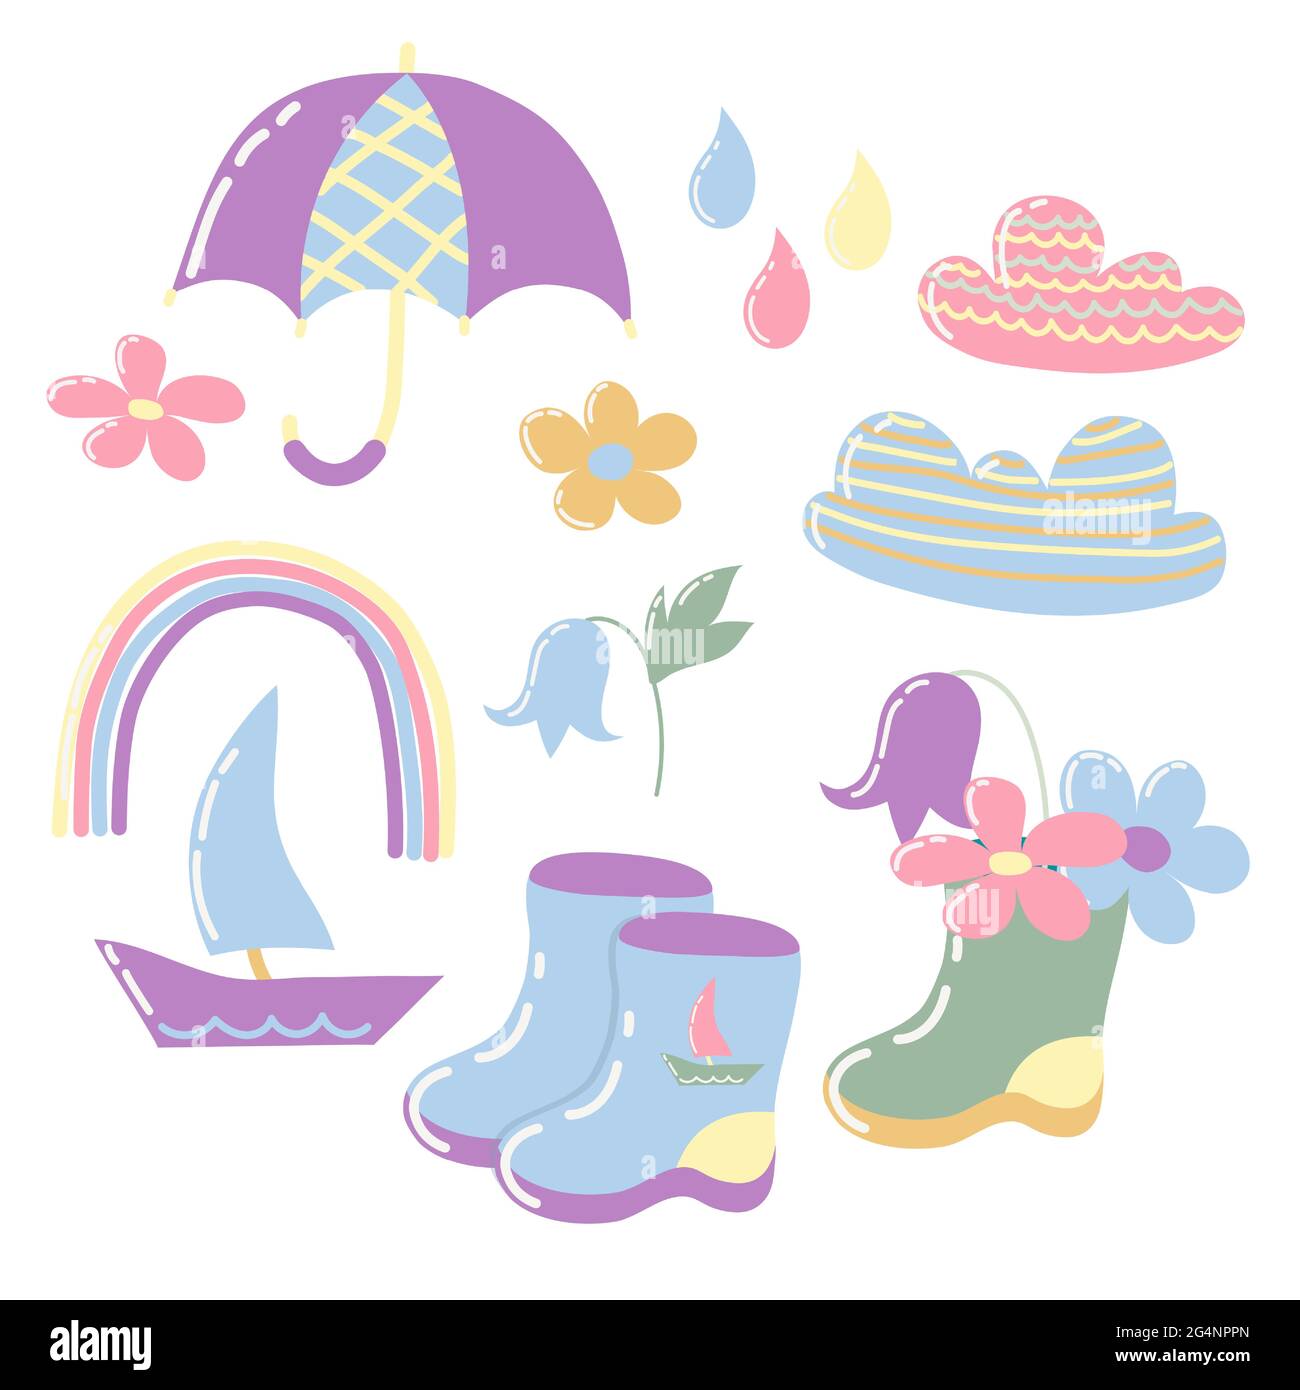 Insieme di immagini carine per bambini di oggetti cartoon sul tema della pioggia. Collezione vettoriale di stampe, adesivi, clipart per bambini design. Illustrazione Vettoriale